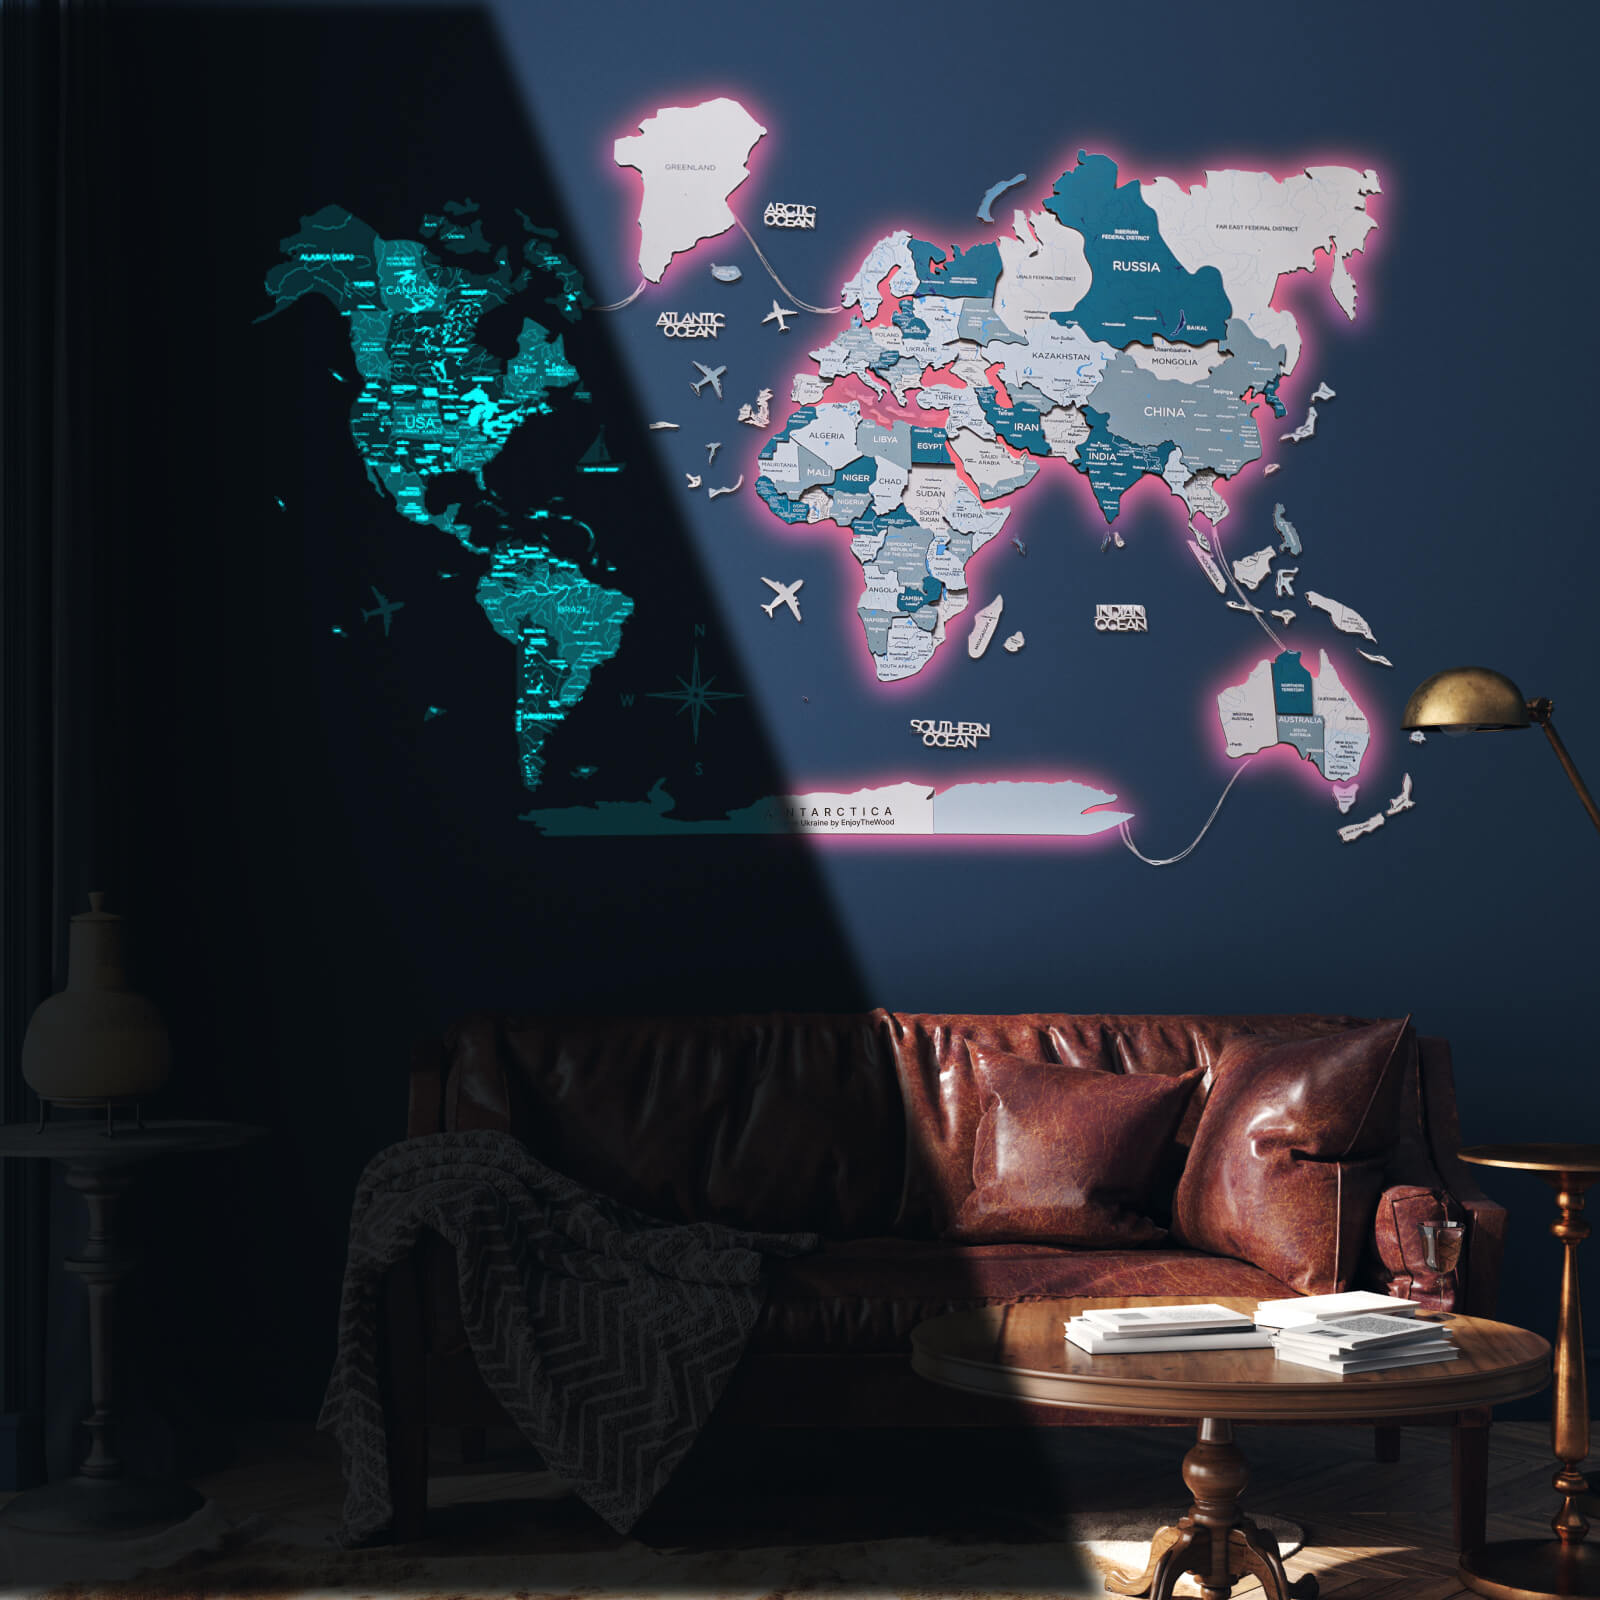 3D LED / LUMINOUS Wooden World Map 3.0 Aqua